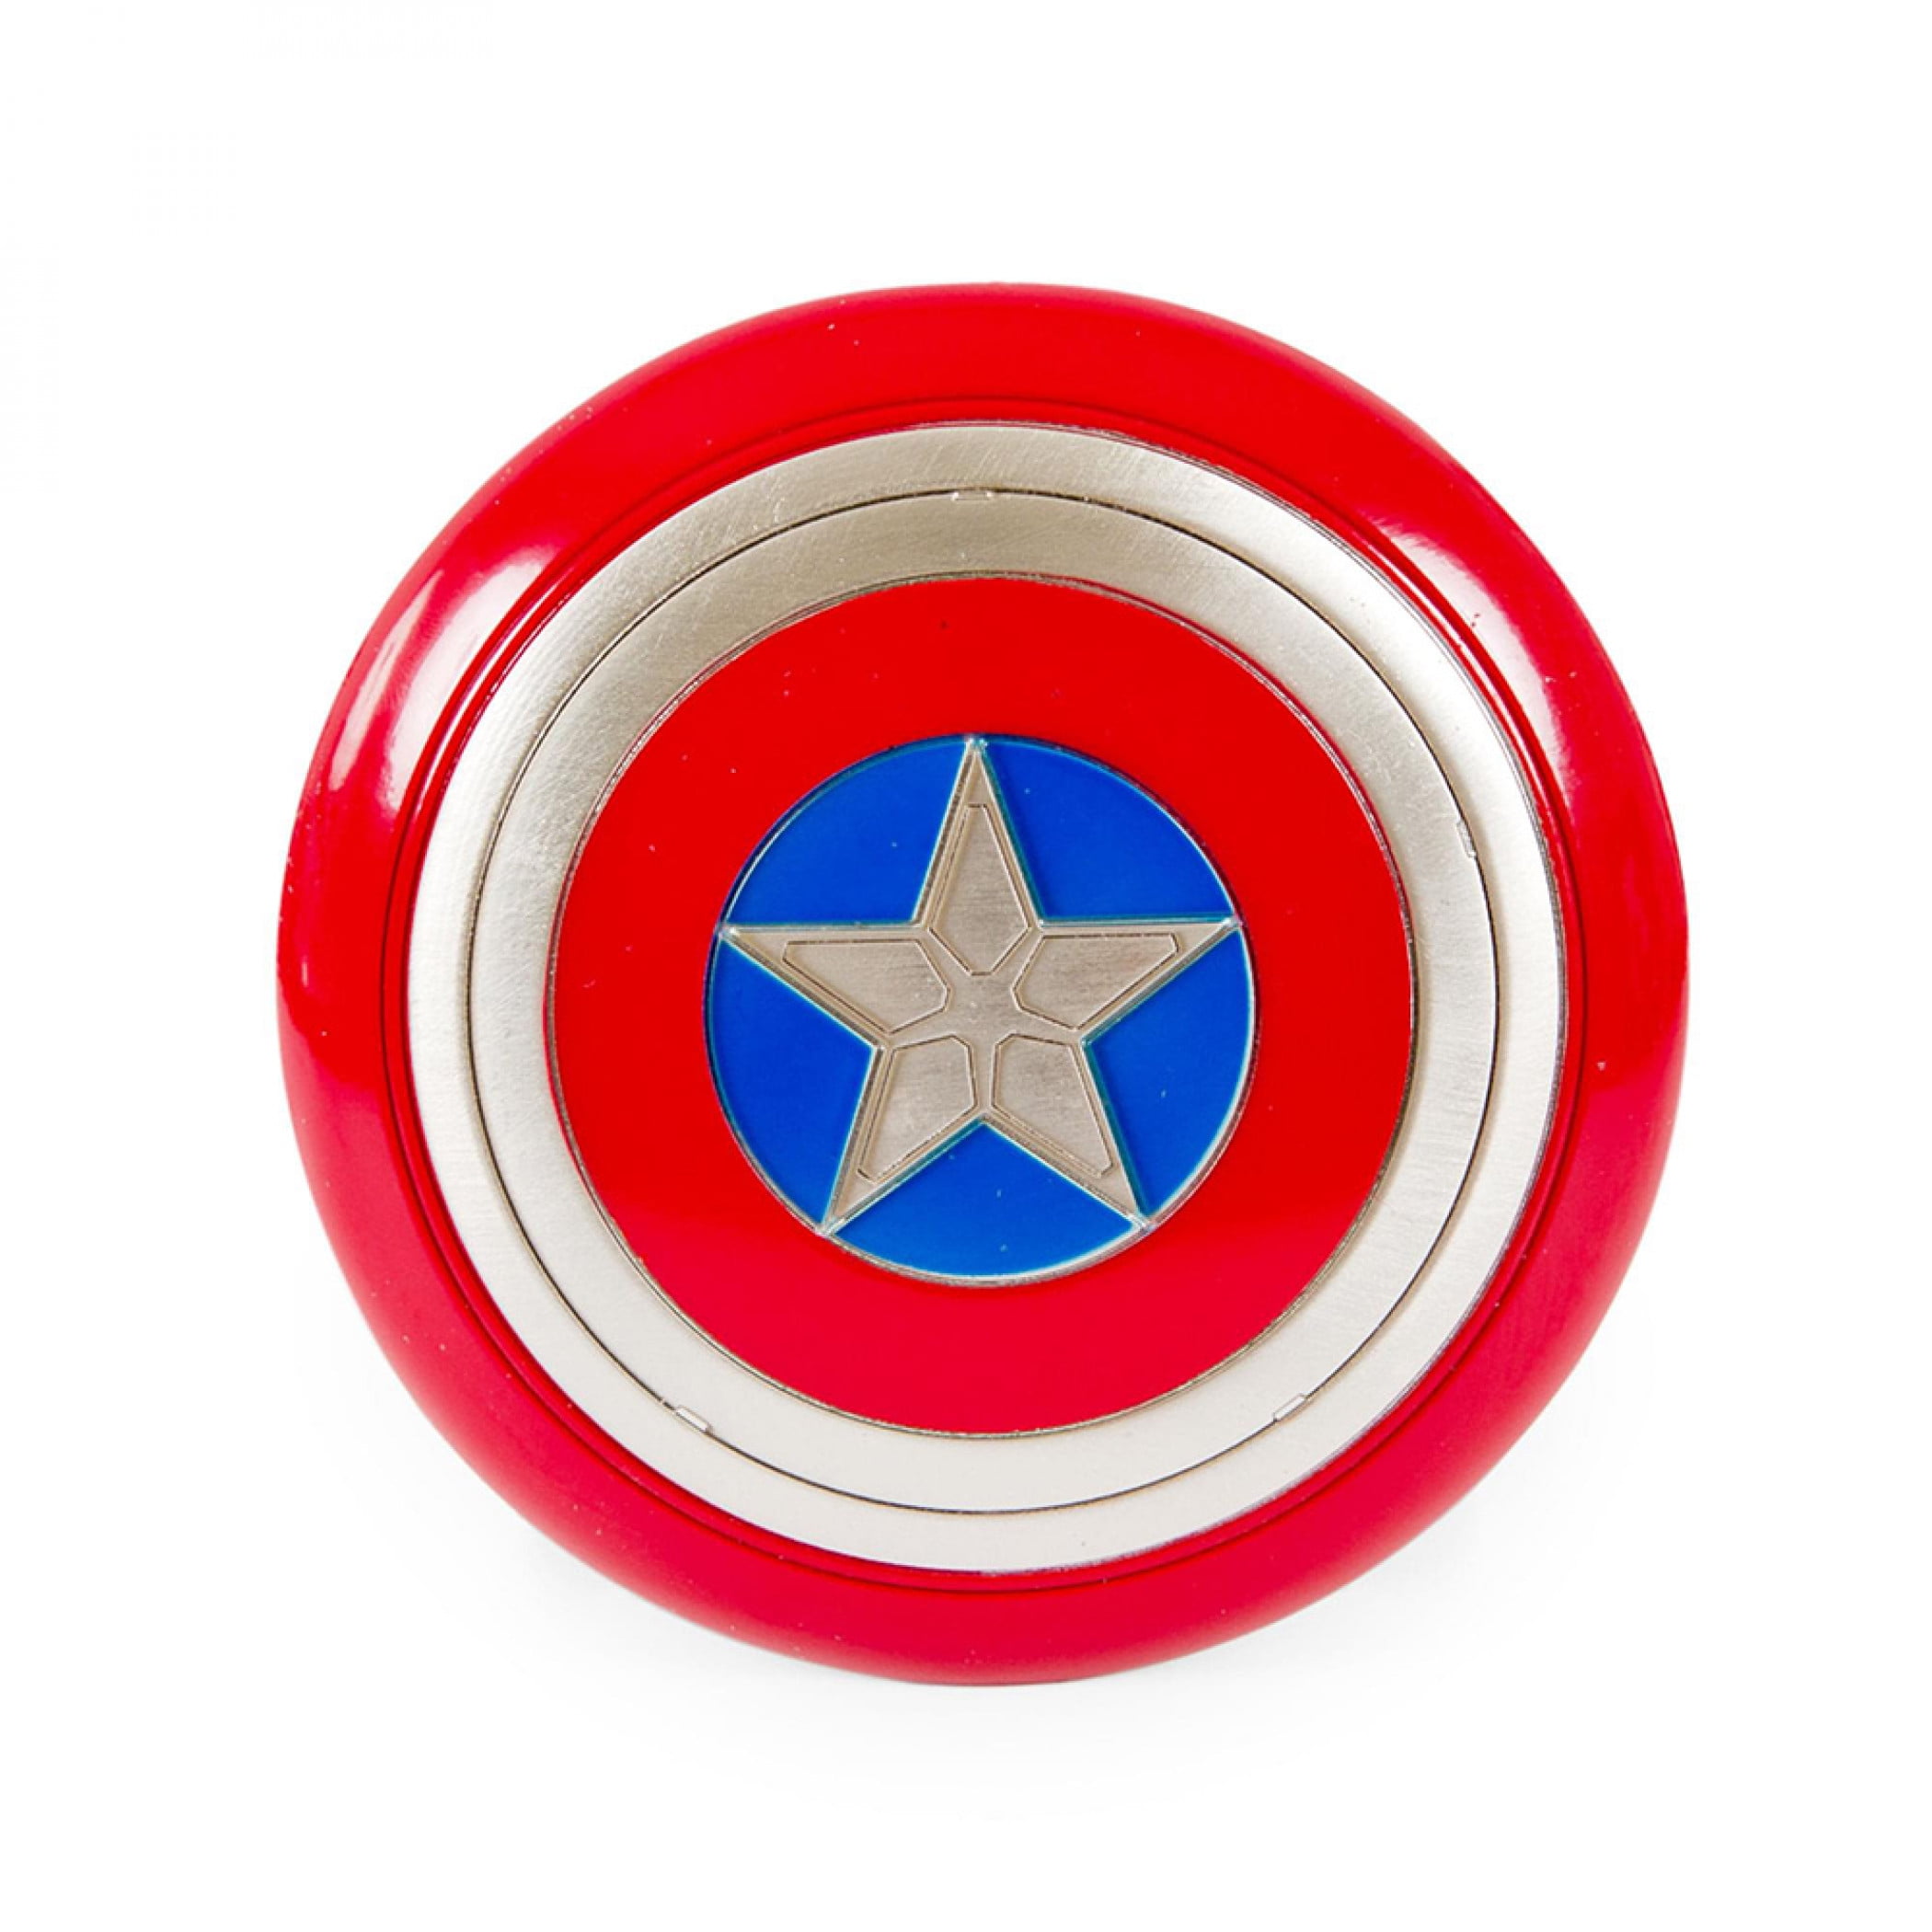 The Avenger Super Hero Captain America Shield Helmet Cosplay Kids Toy Plastic 